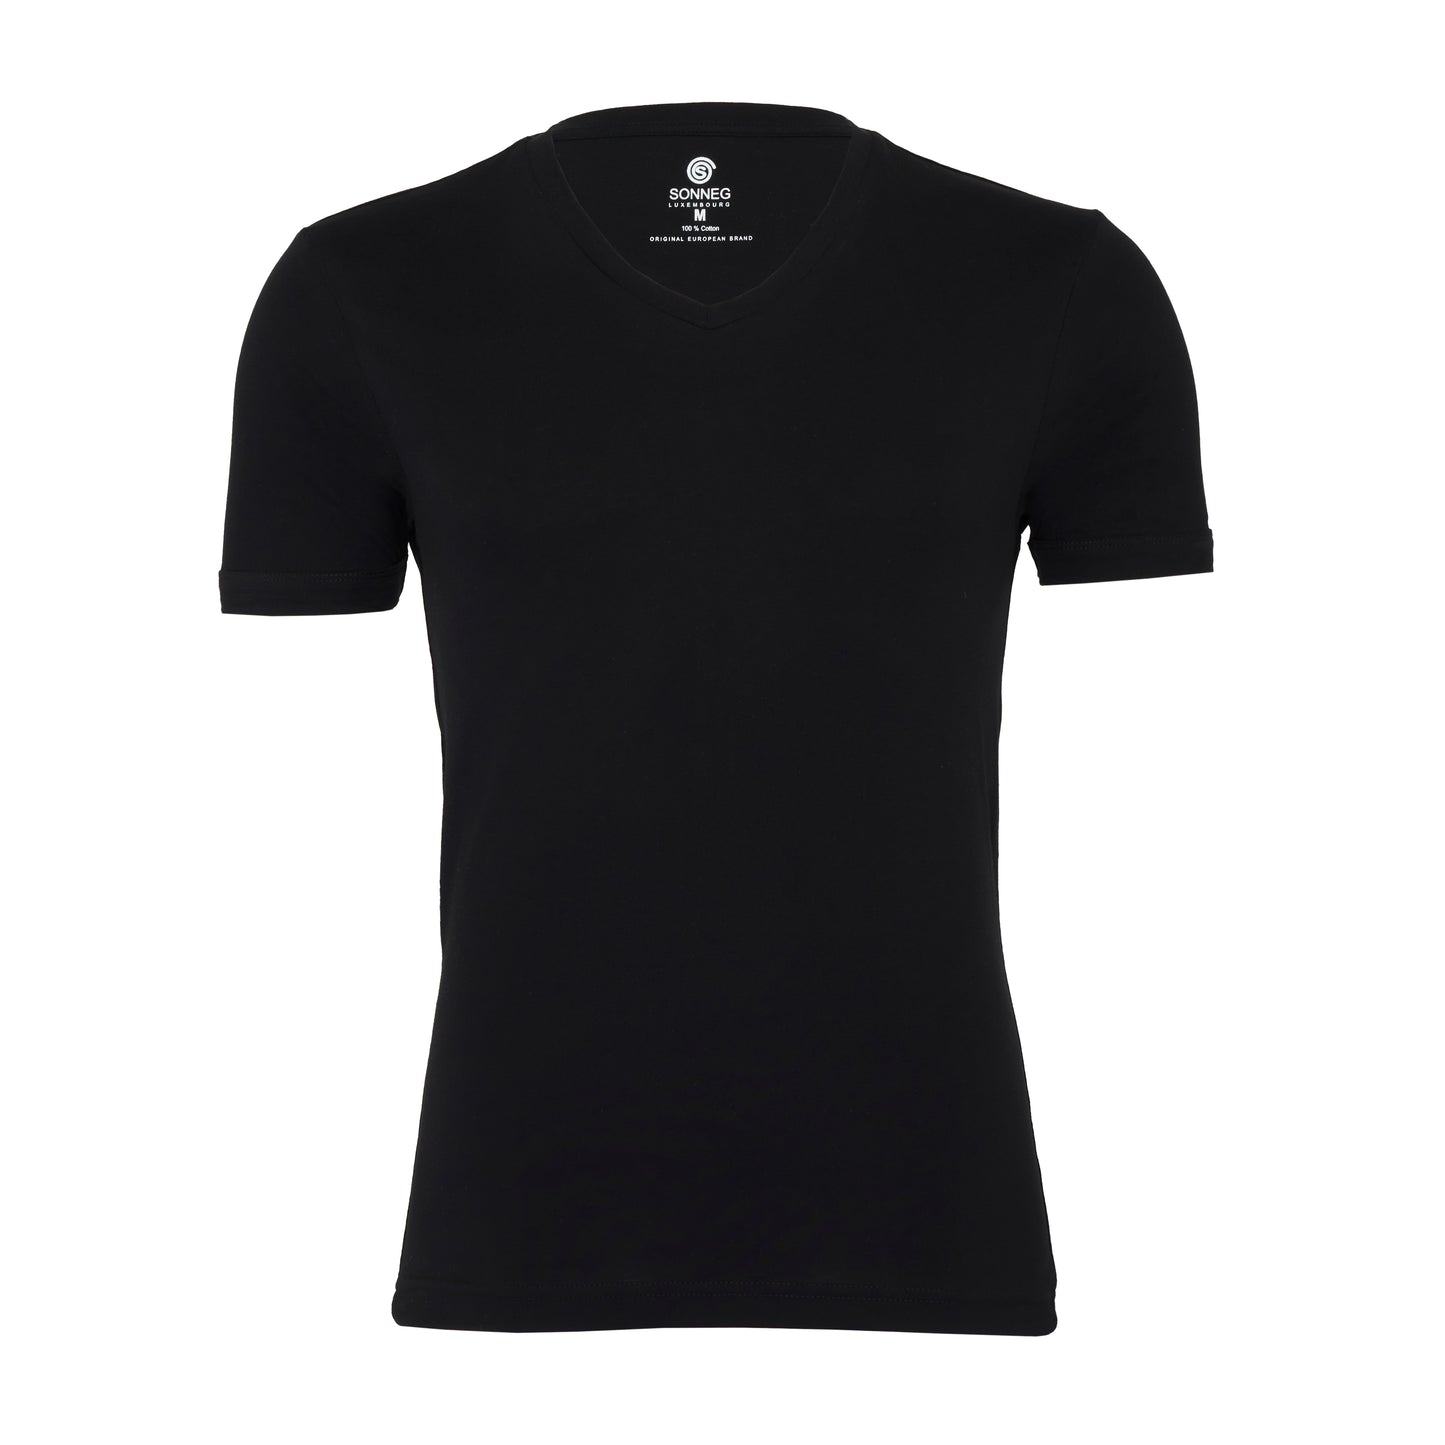 Tiefer V-Ausschnitt, Schwarzes, Körperfit T-Shirt – Packung mit 2 oder 4 T-Shirts